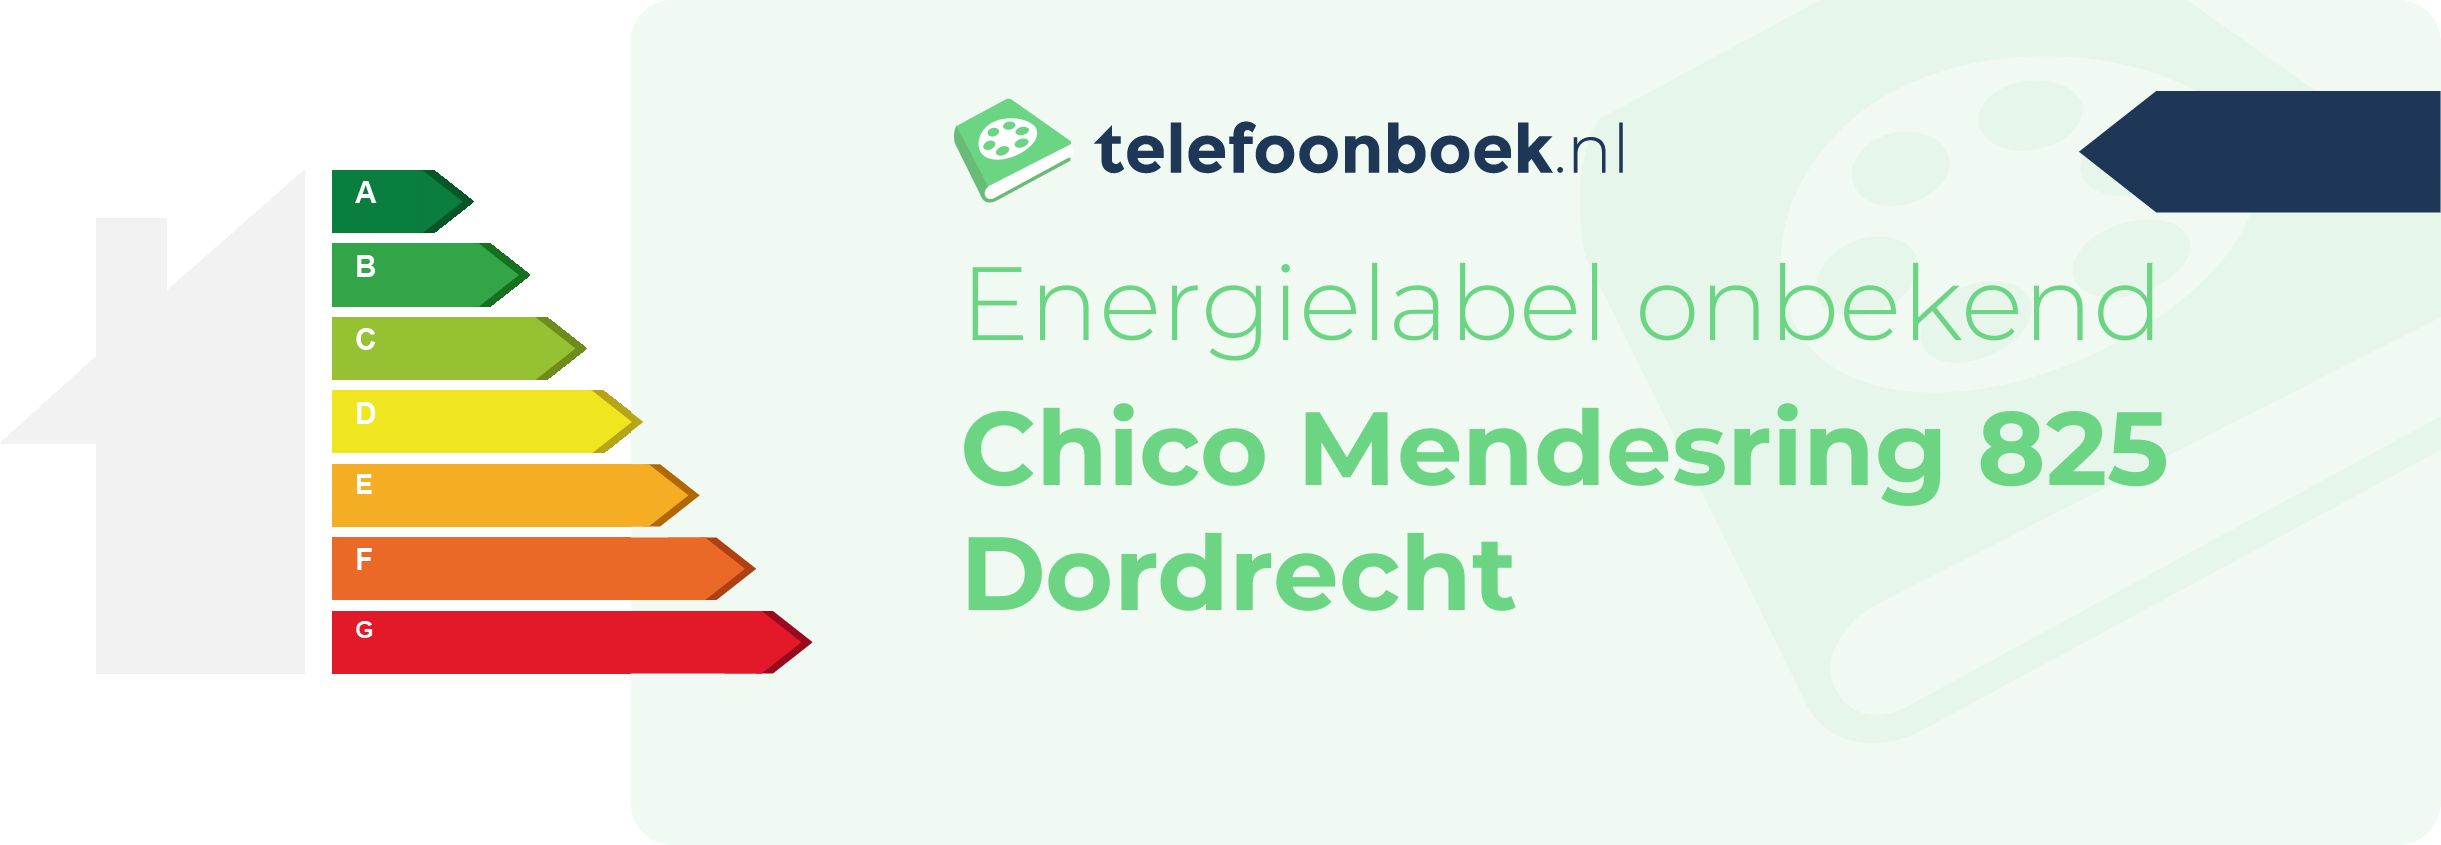 Energielabel Chico Mendesring 825 Dordrecht